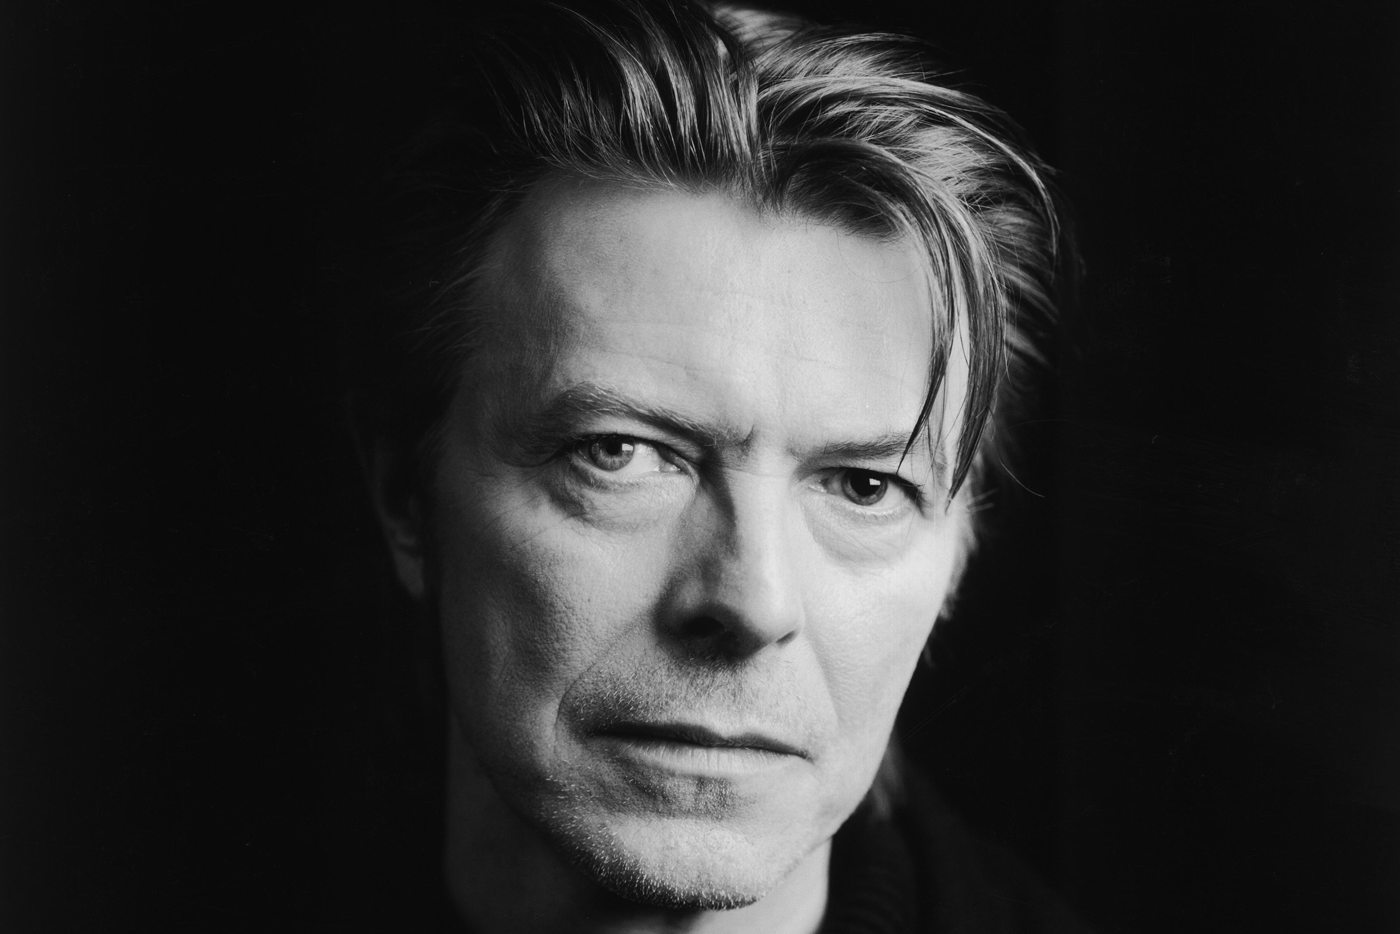 El tributo benéfico a David Bowie de Razzmatazz cierra cartel